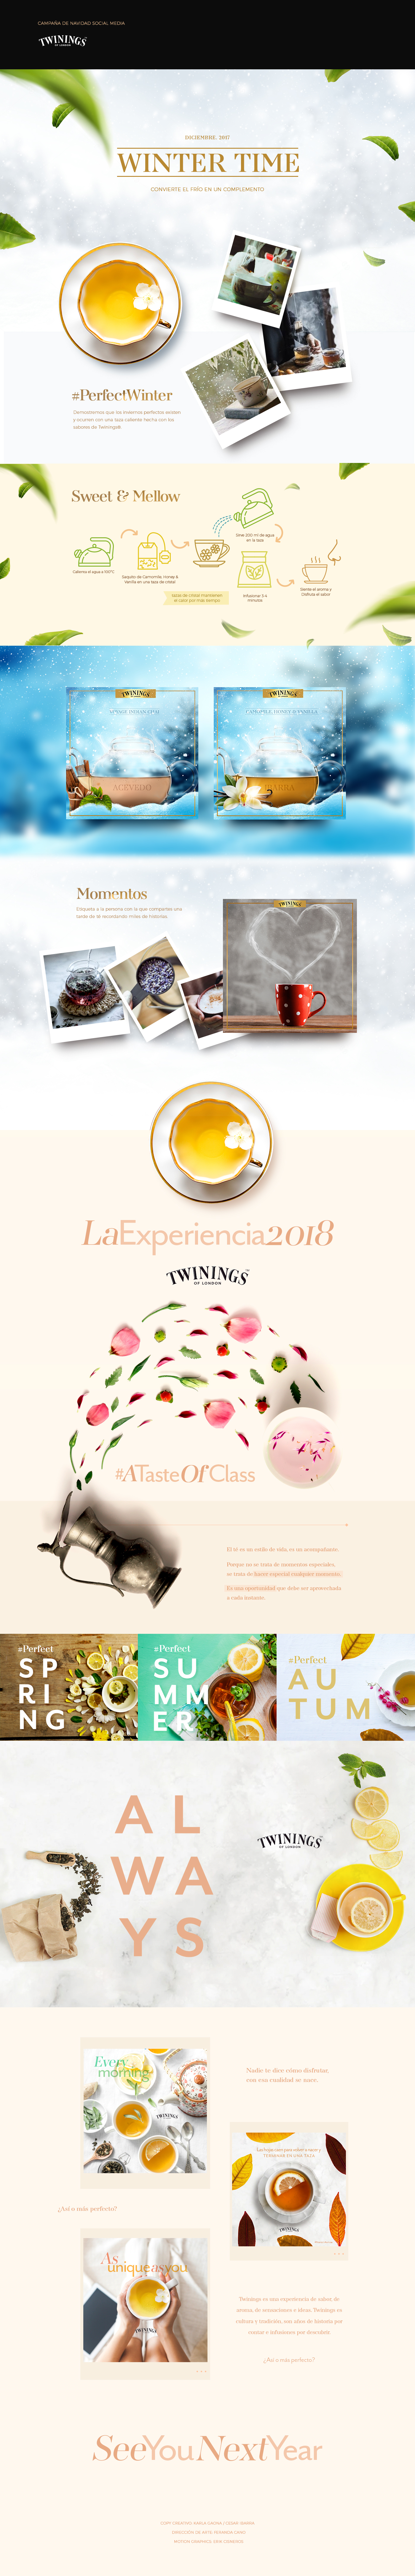 twinings tea social media minimal trend